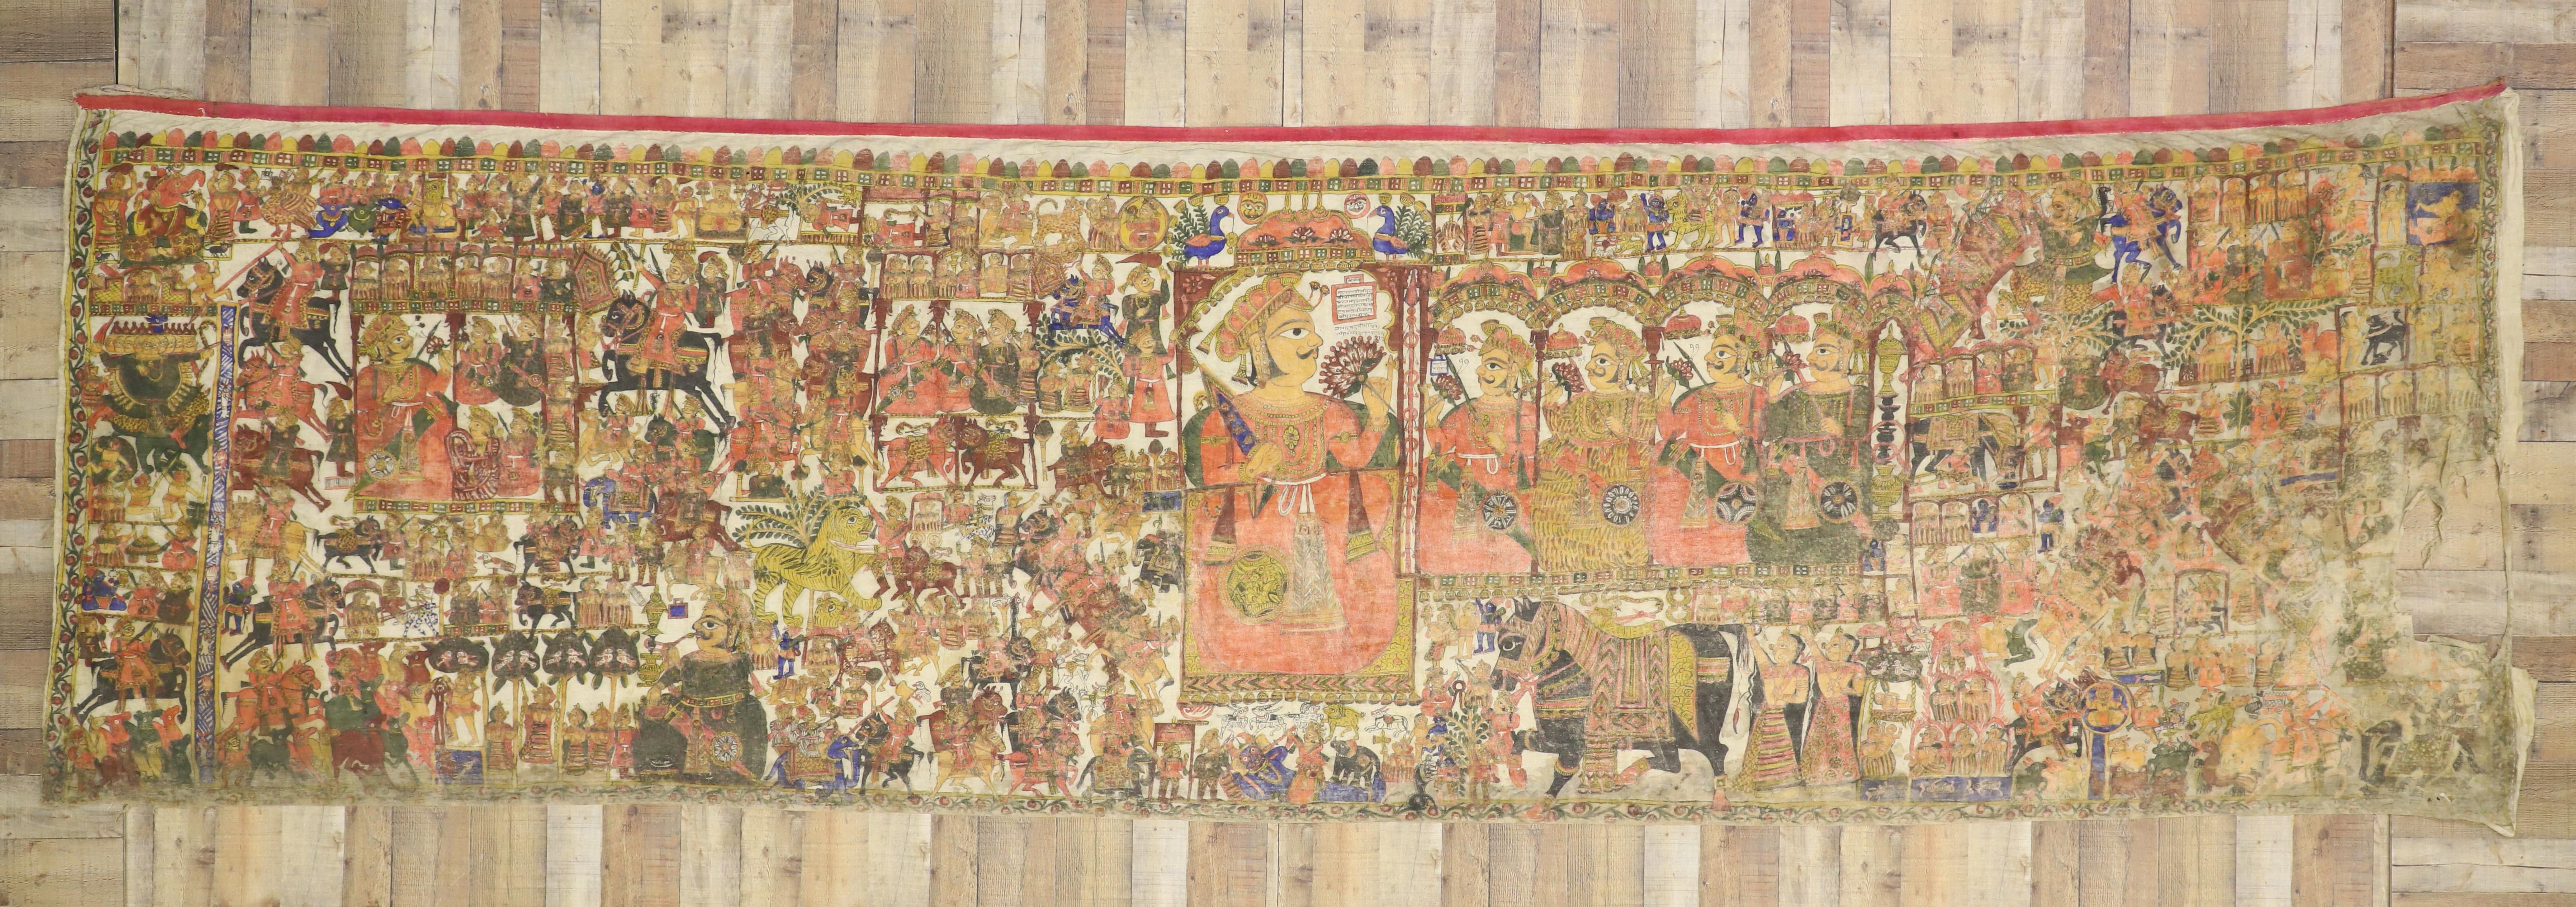 74417 Antiker mittelalterlicher indischer Wandteppich aus dem 18. Jahrhundert nach der Schlacht von Karnal im Jahr 1739.  Dieser schöne antike indische Wandteppich ist auf einer Leinwand gemalt. Es zeigt eine Jagdschlachtszene mit Königen,